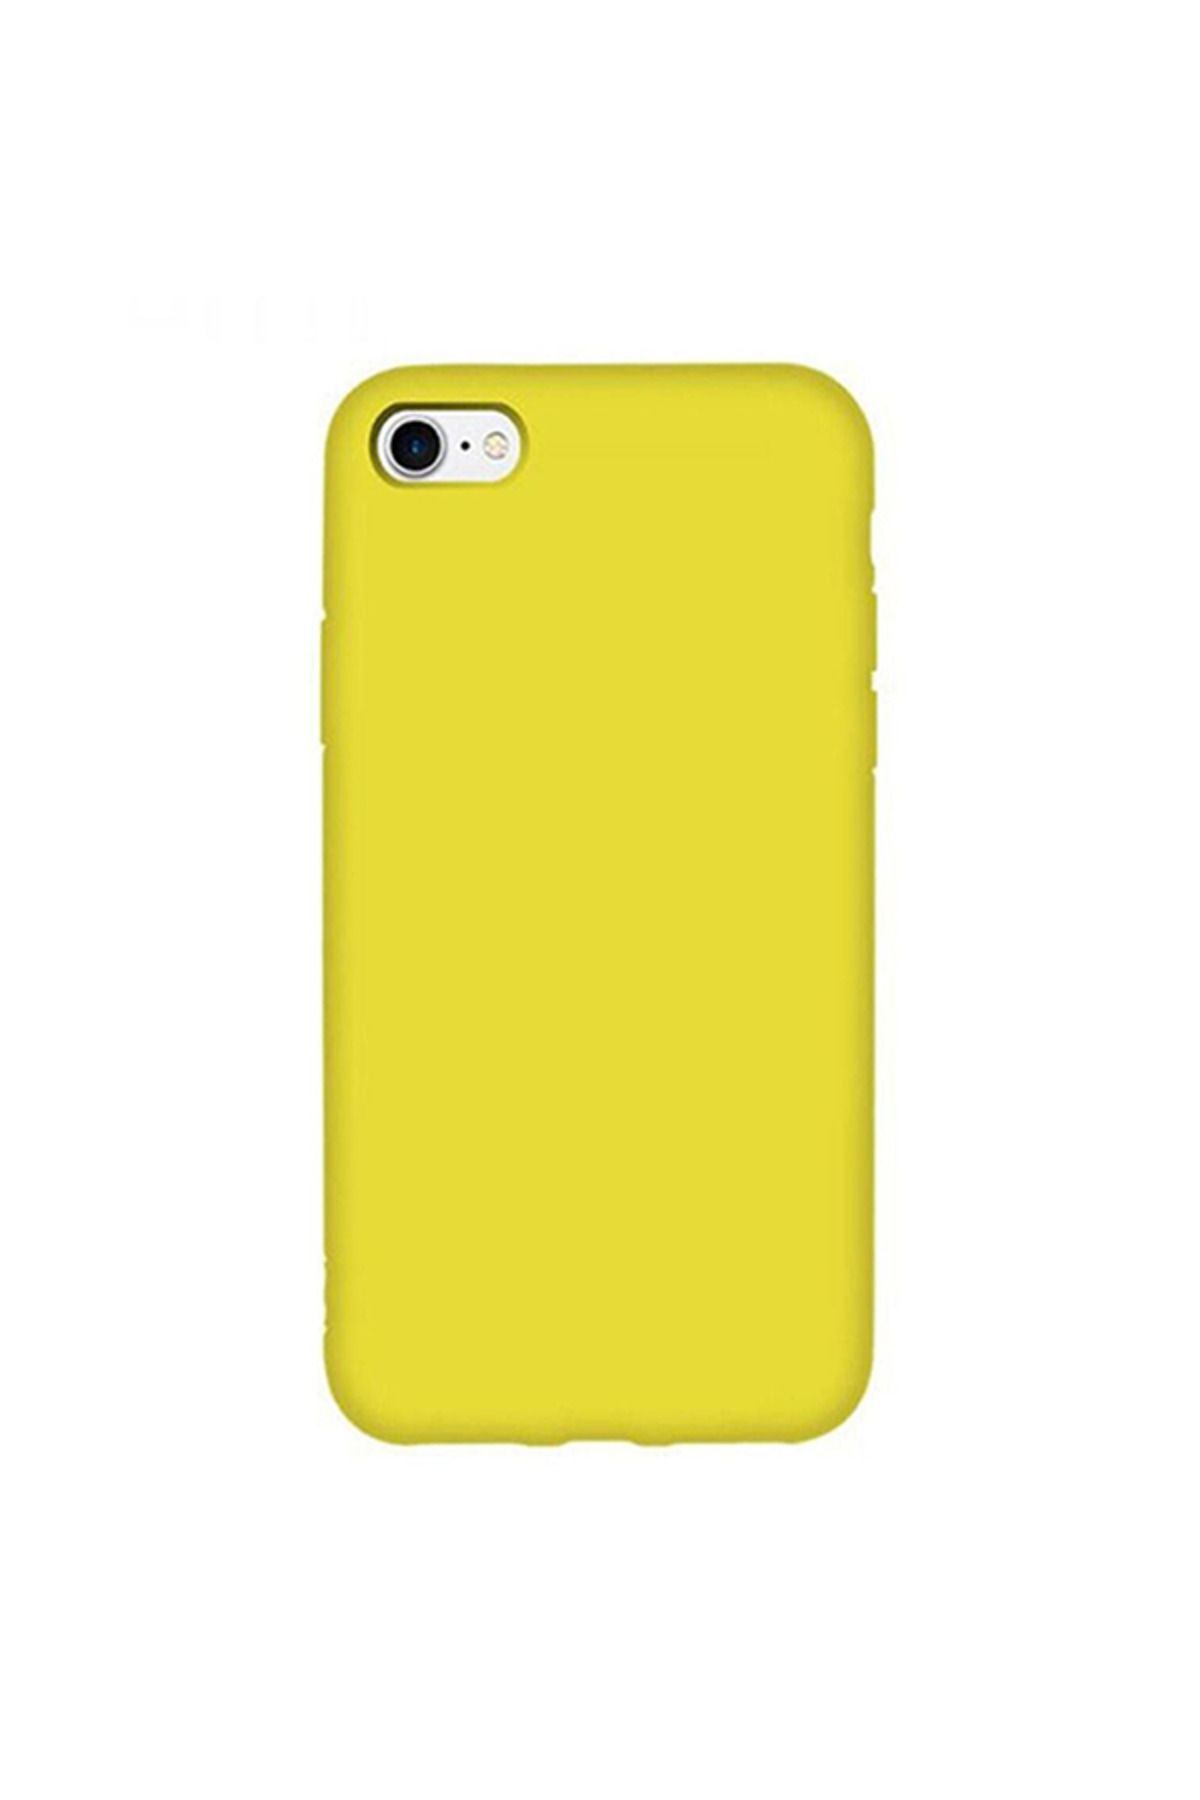 TrendCell Iphone 6 / 6s Uyumlu Içi Kadife Lansman Silikon Kılıf Kapak Sarı